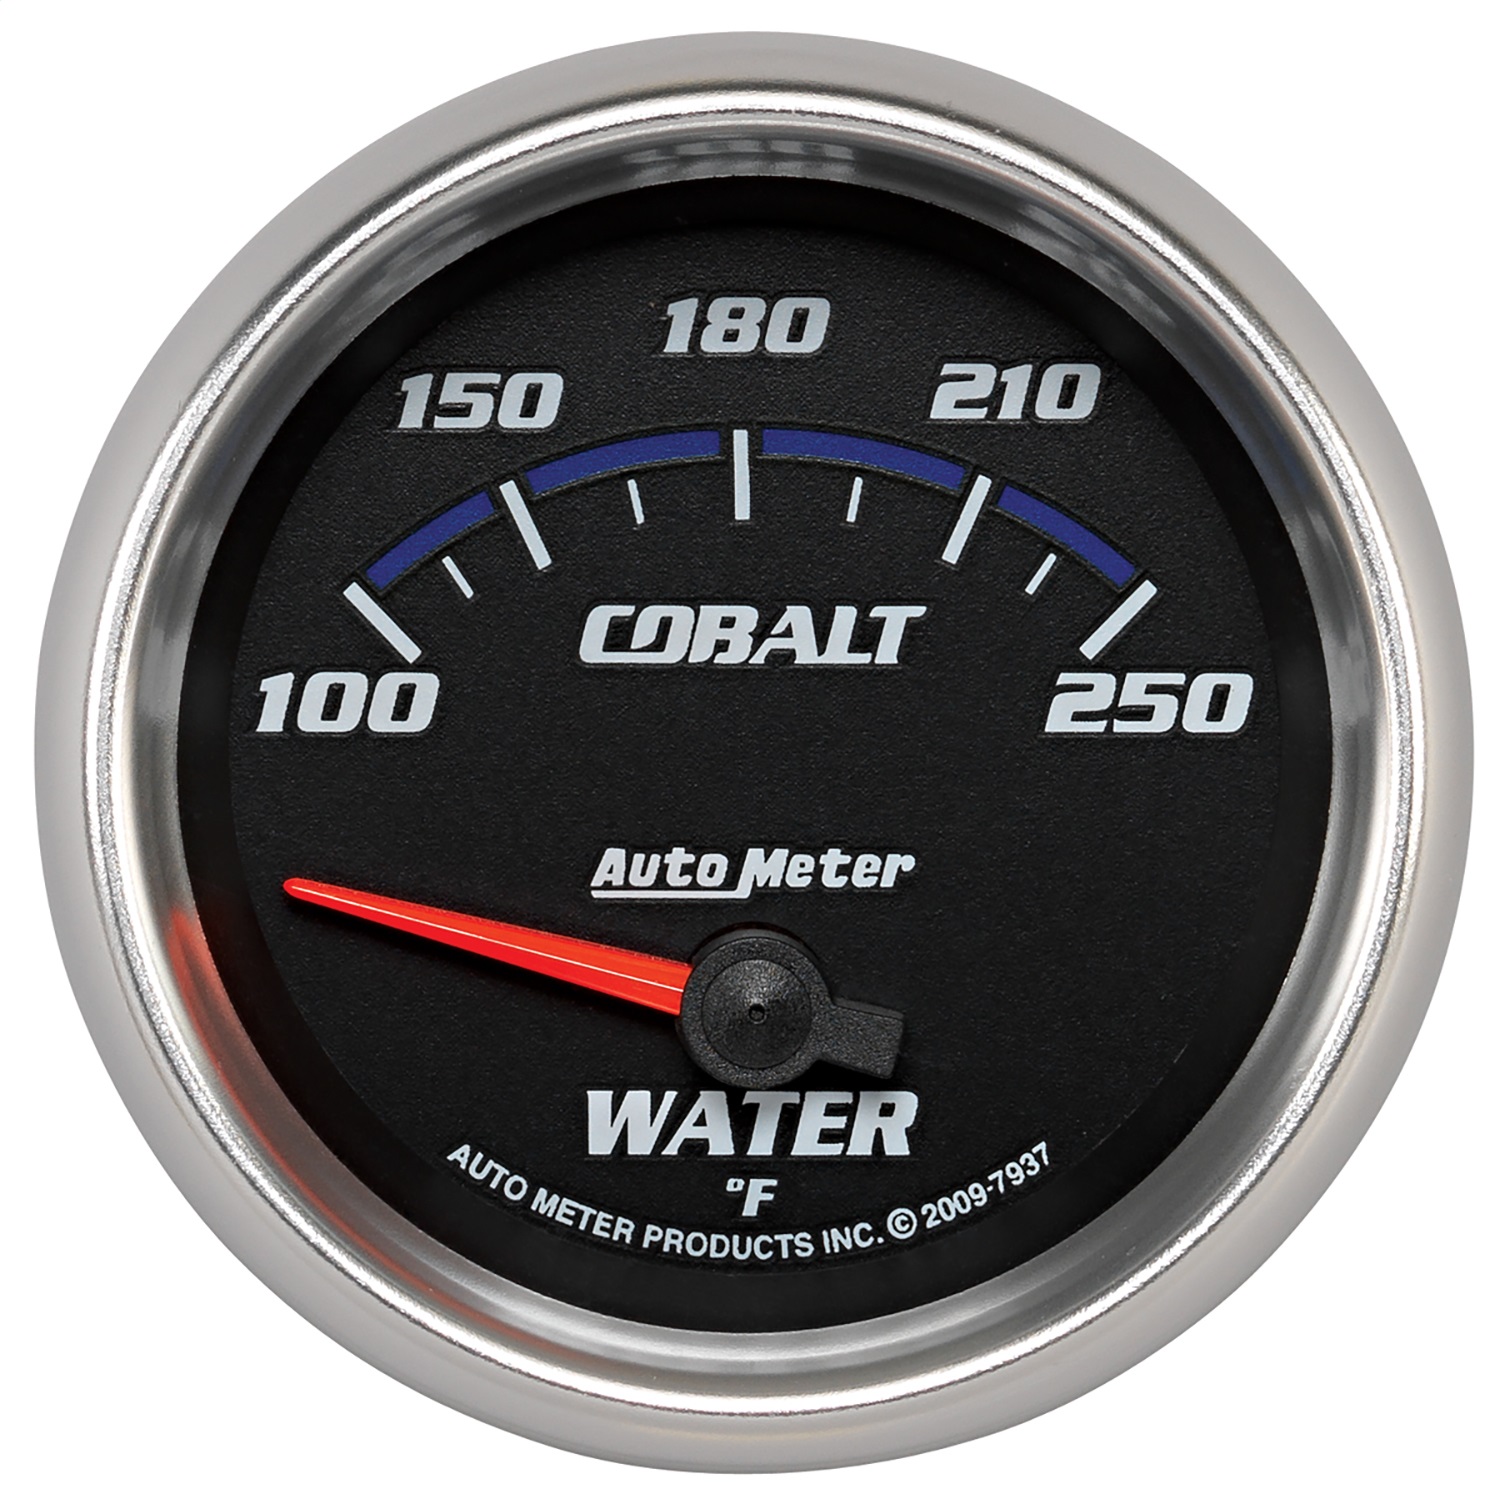 Auto Meter Auto Meter 7937 Cobalt; Electric Water Temperature Gauge